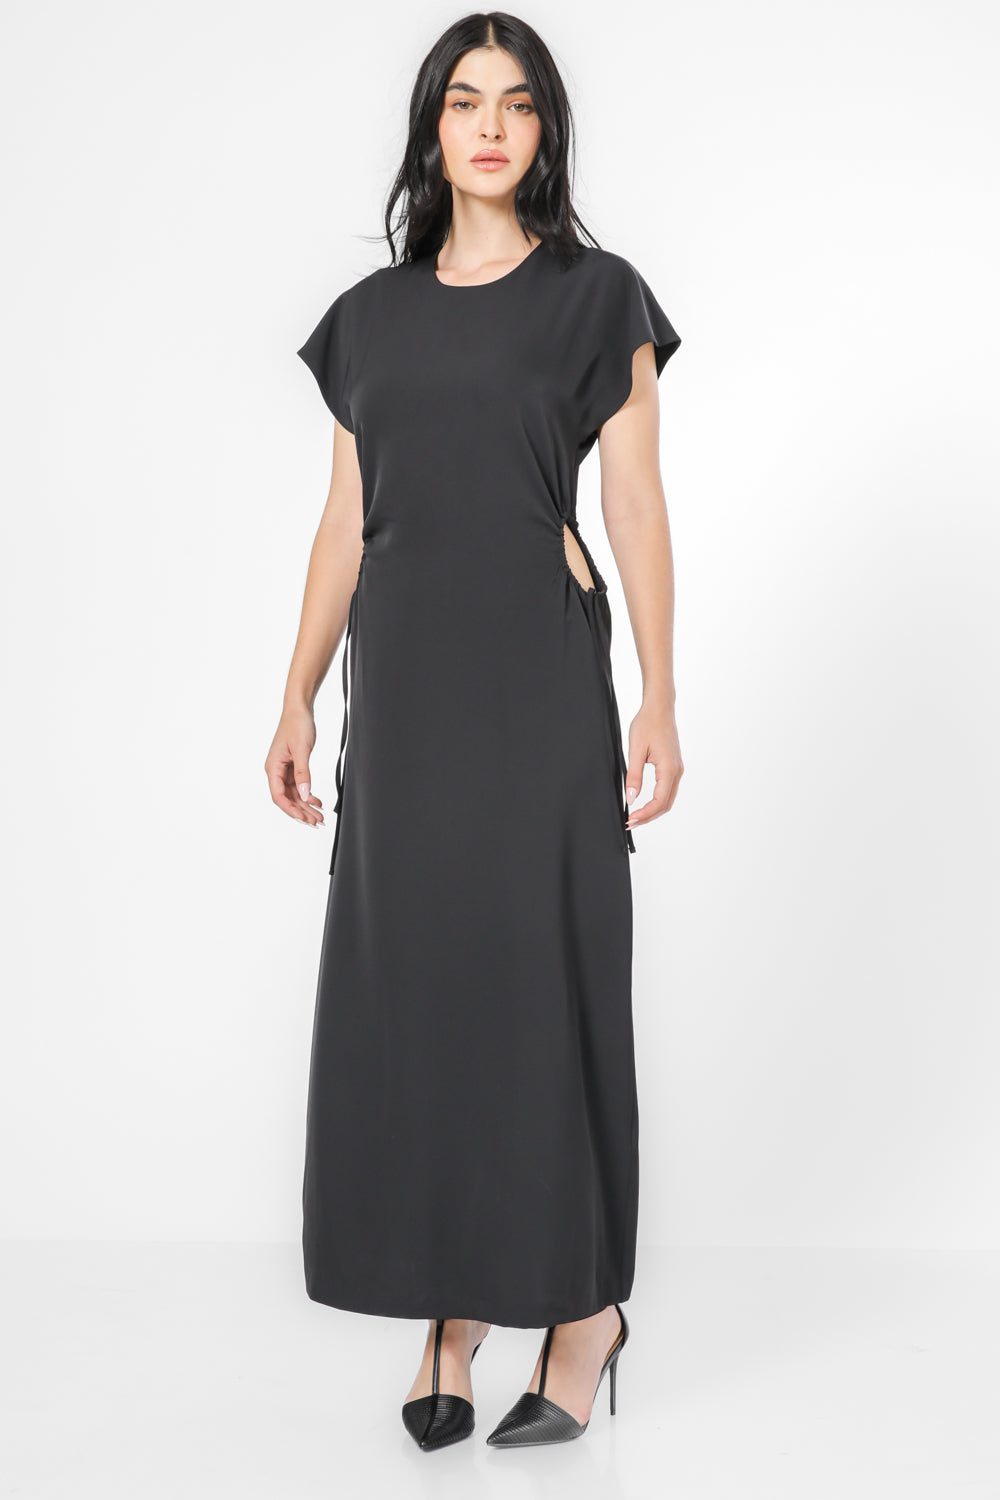 שמלה עם קשירה בצדדים בצבע שחור